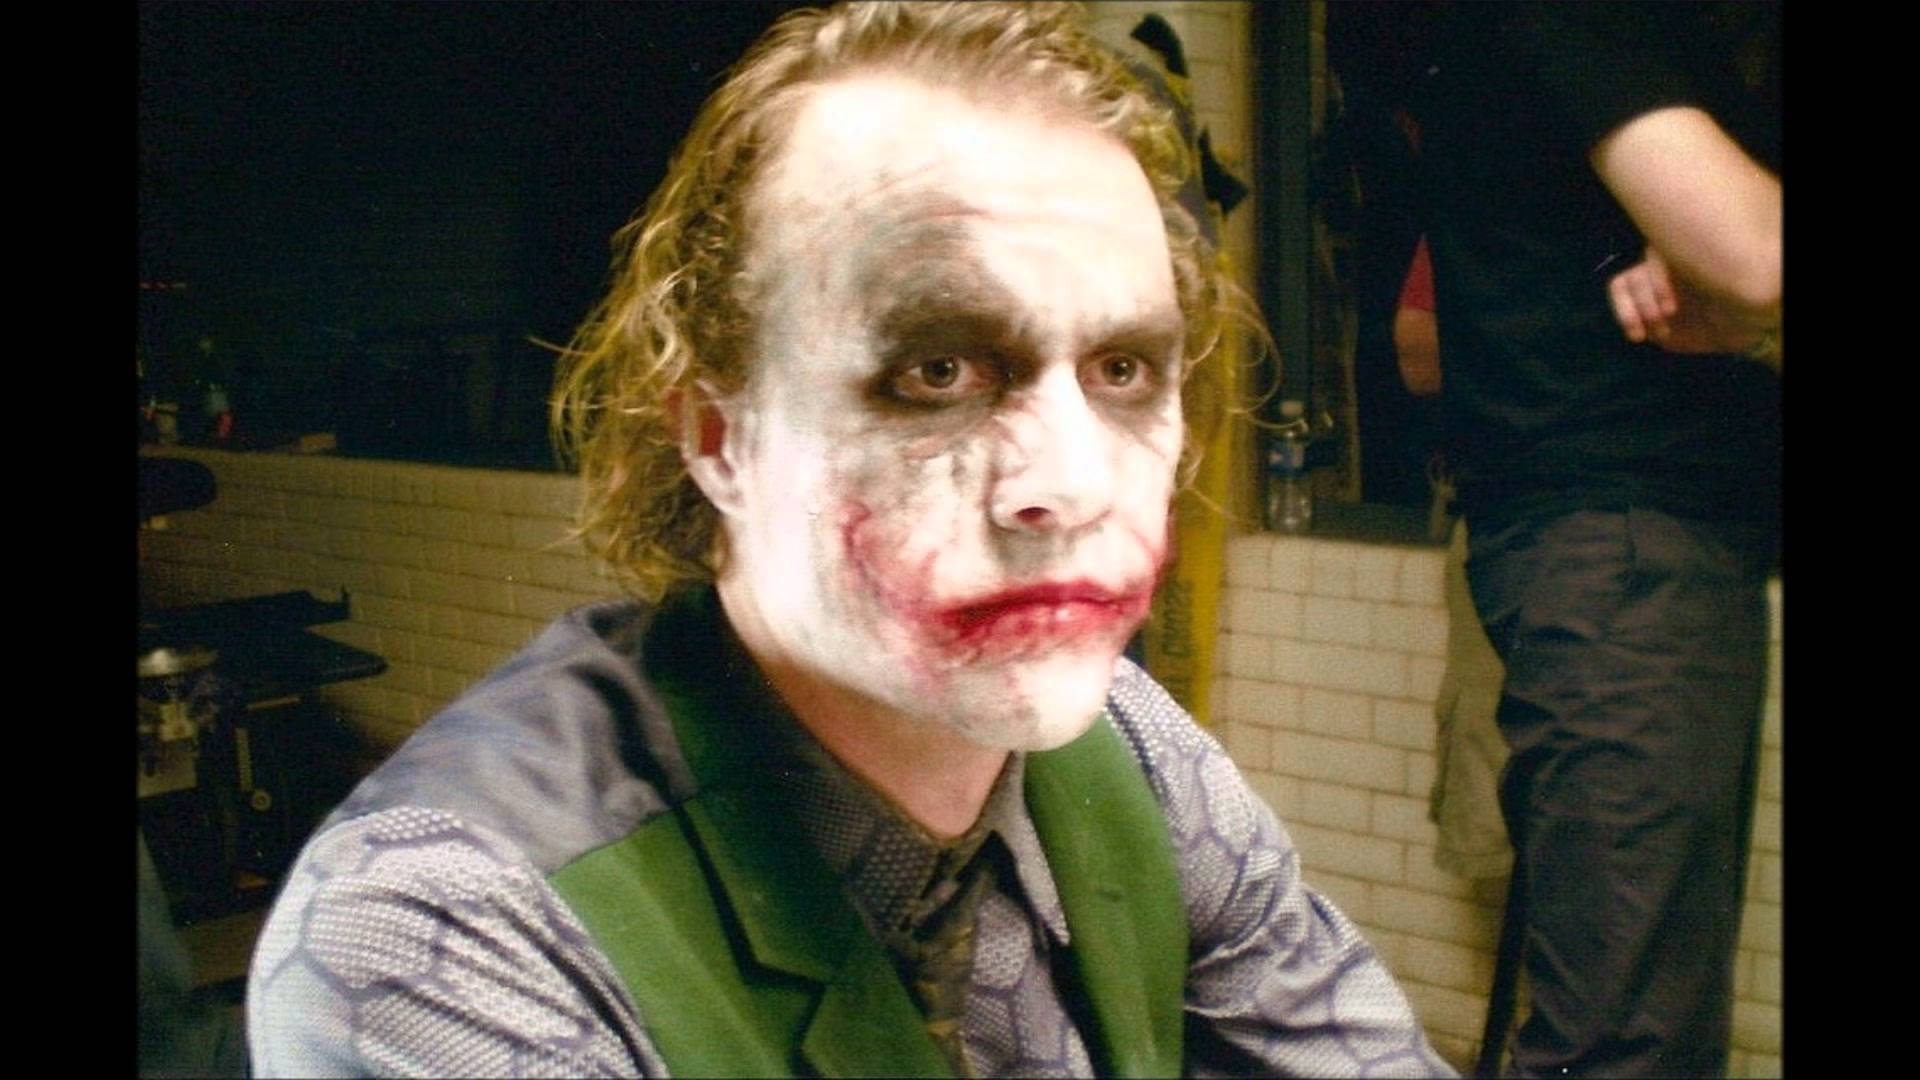 10 Top Heath Ledger Joker Image FULL HD 1920×1080 For PC Background 2021